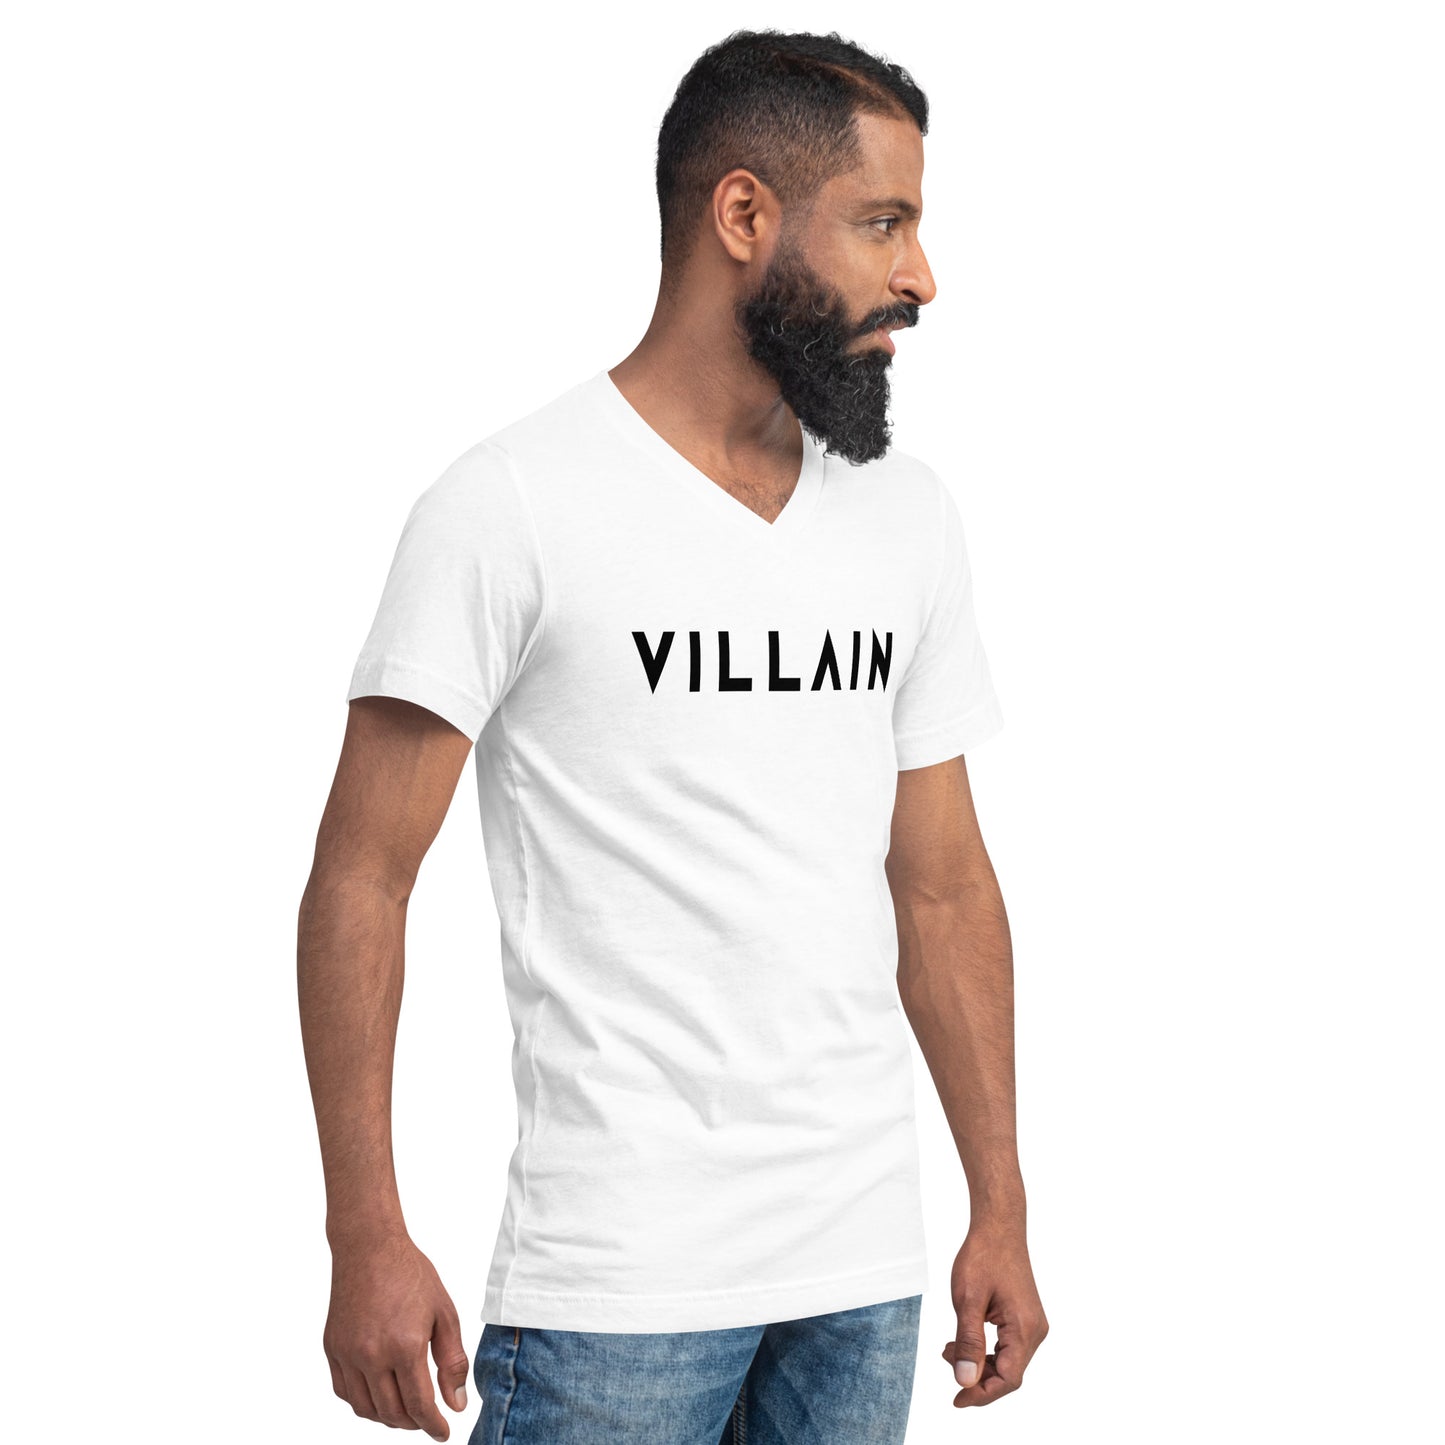 Villain Unisex Short Sleeve V-Neck T-Shirt WHT